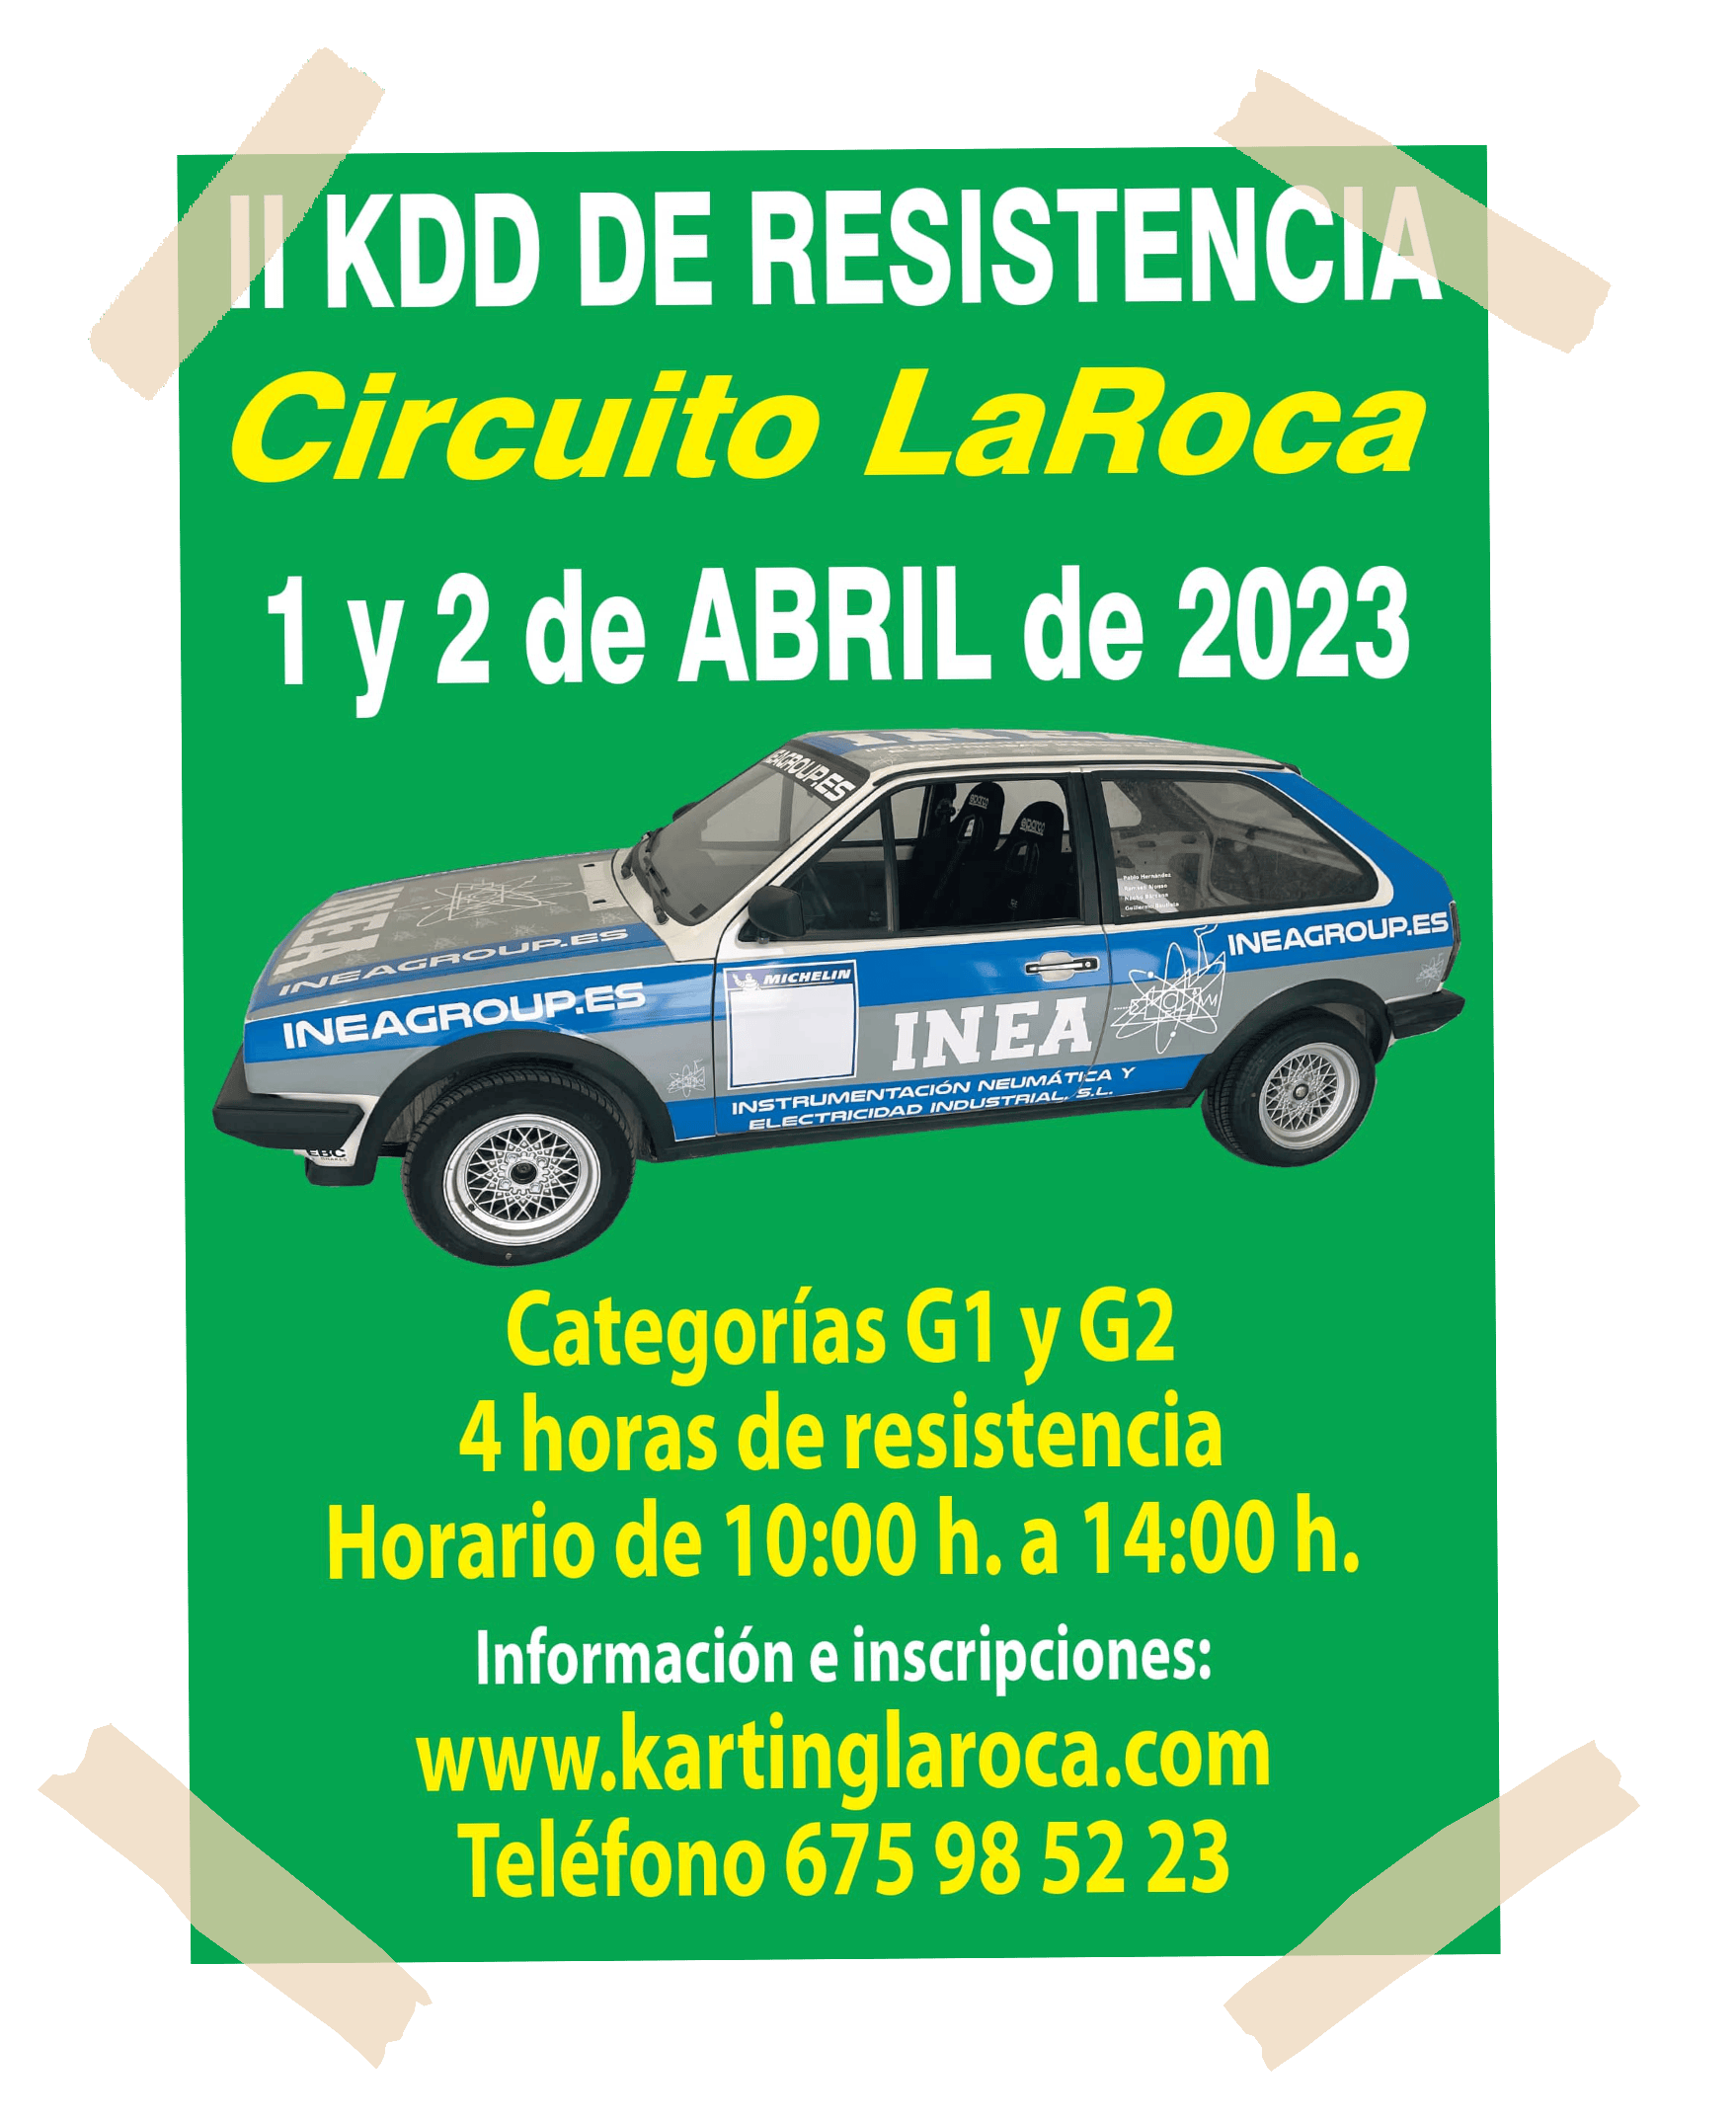 cartel-kdd-resistencia-karting